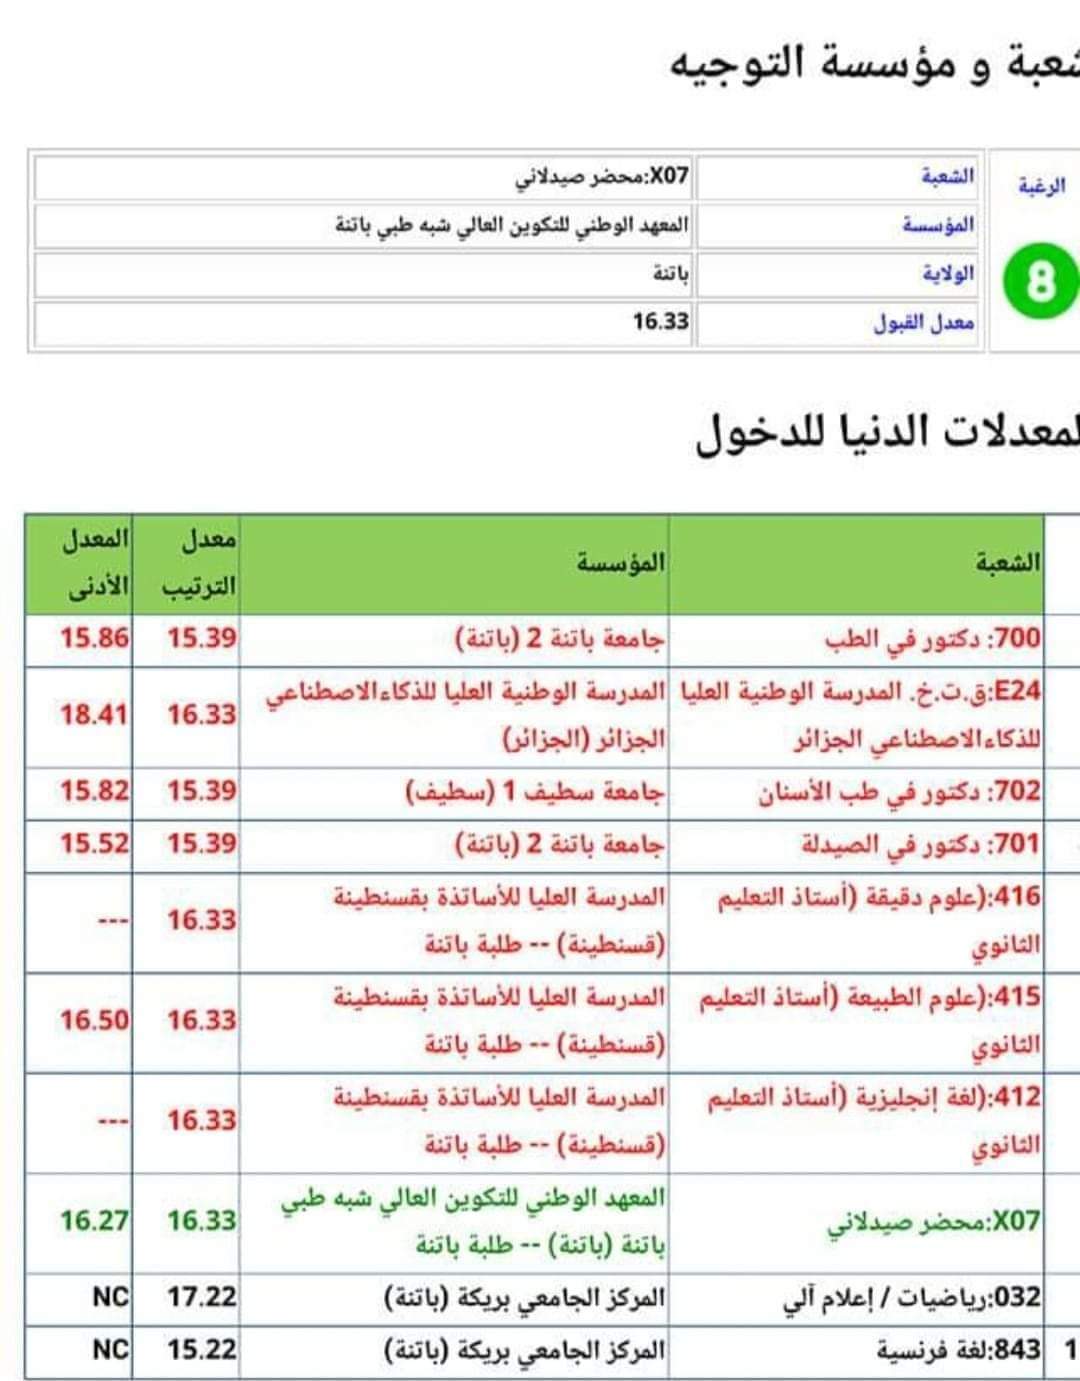 FB IMG 1658506615193 - معدلات القبول 2022 في الجزائر.. تعرف على التخصصات الجامعية في الجزائر حسب المعدل